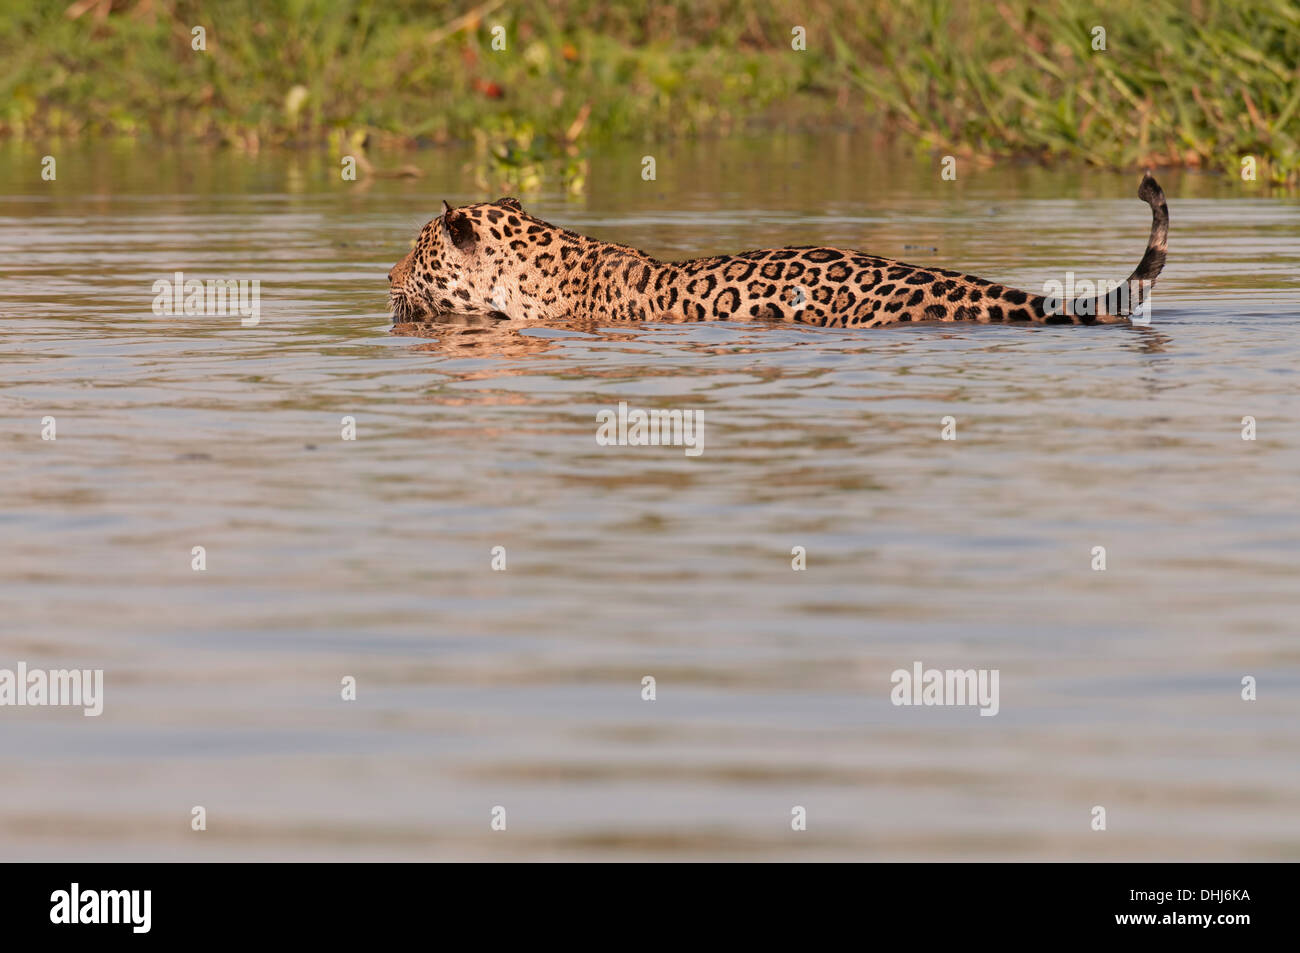 Foto di stock di una Jaguar nuotare nel fiume, Pantanal, Brasile. Foto Stock